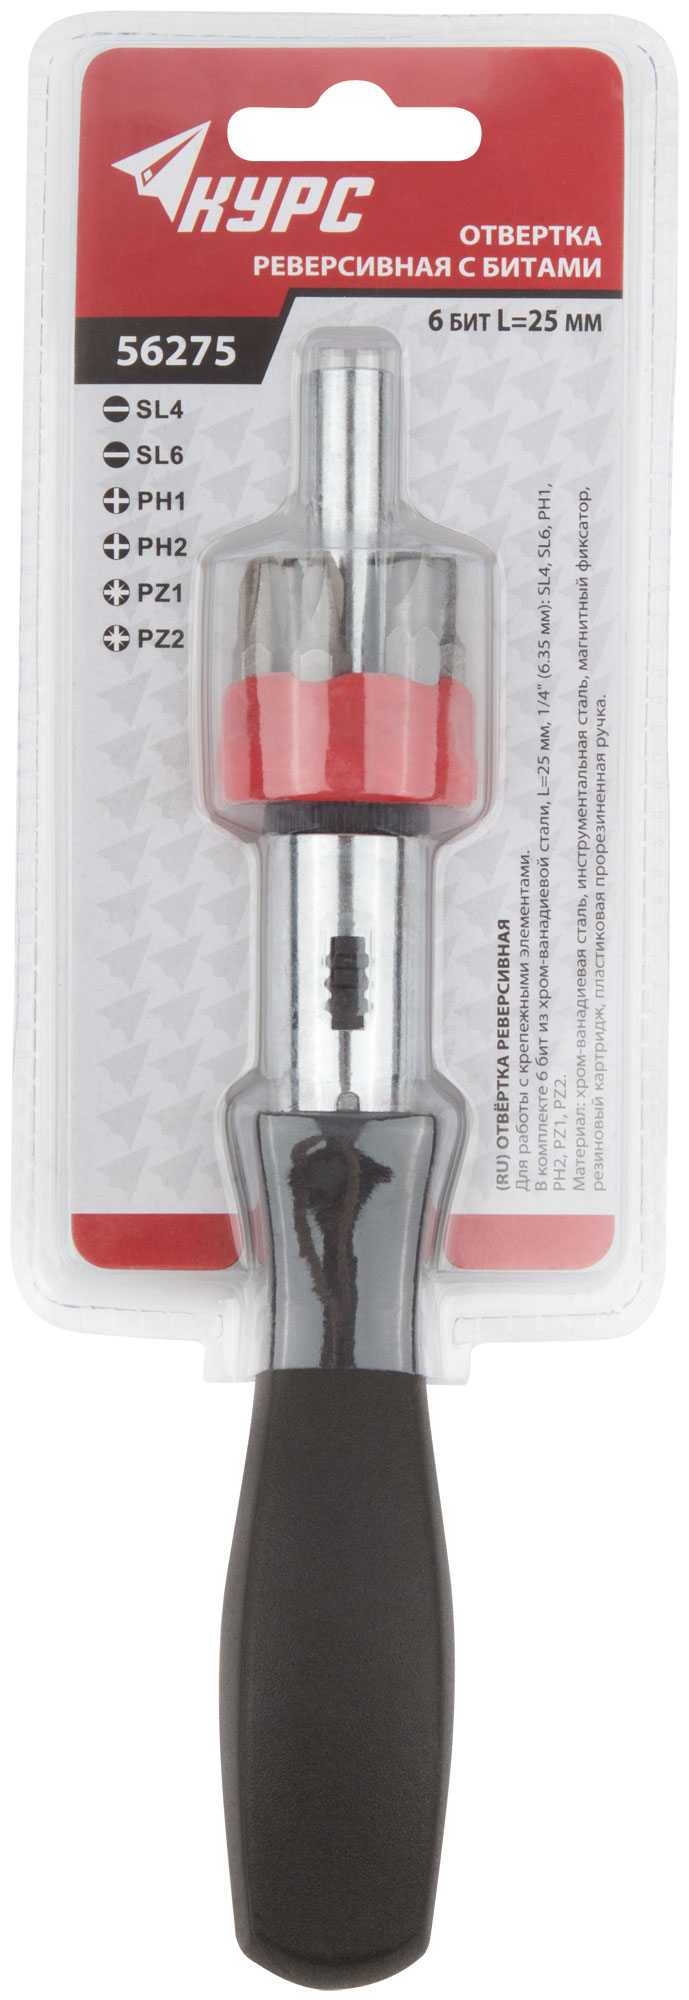 Отвертка реверсивная, 6 CrV бит, пластиковая ручка